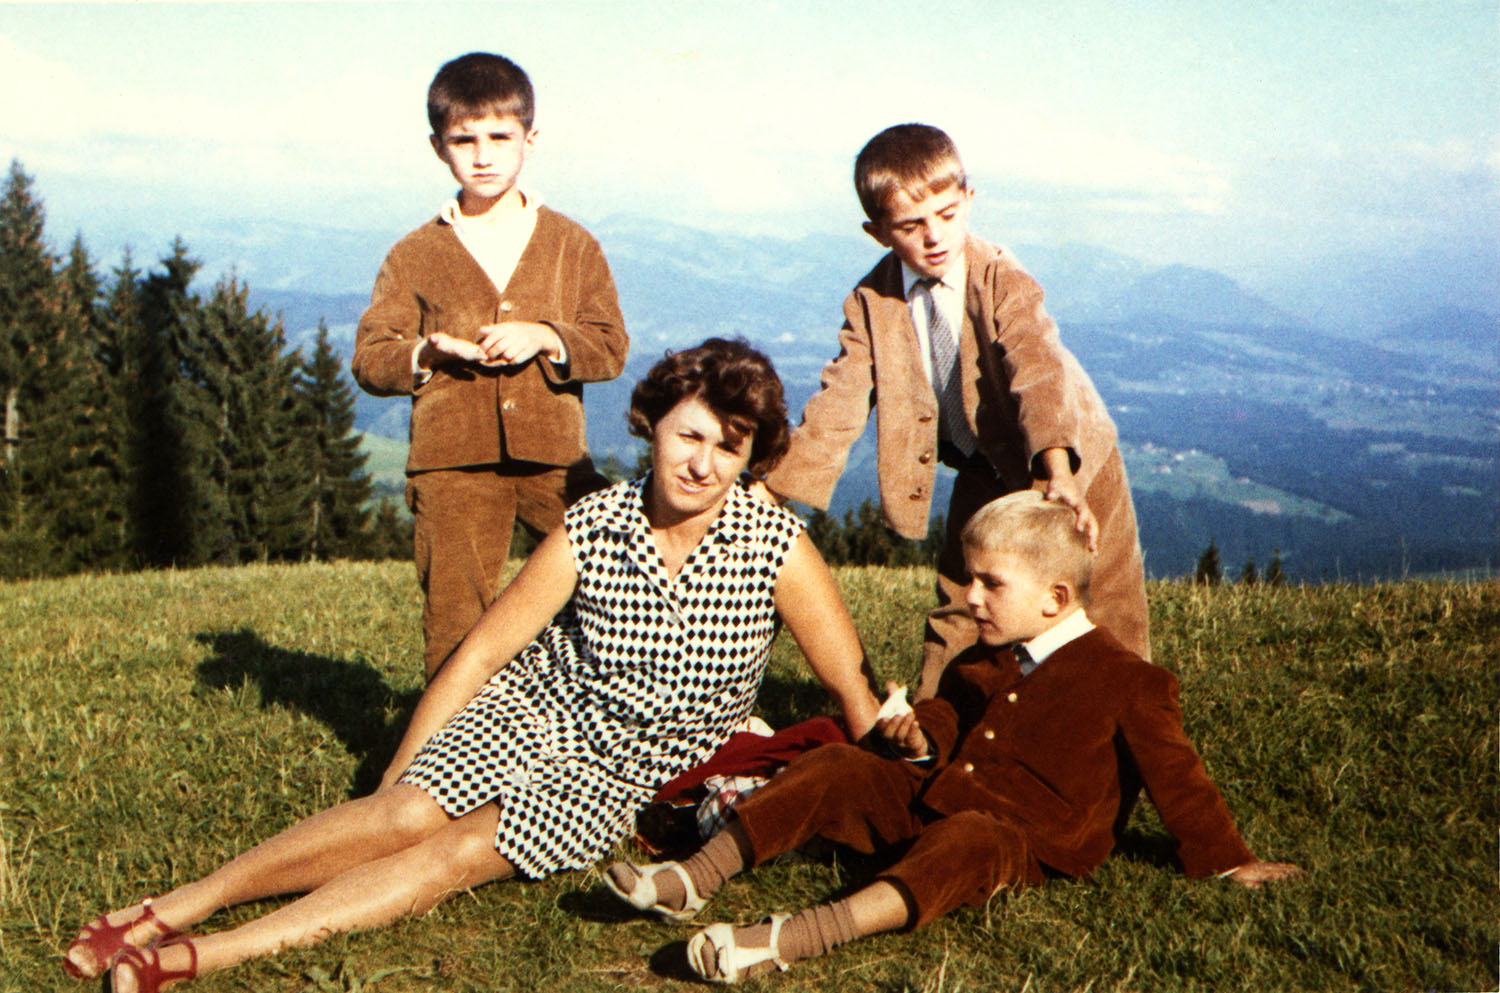 Une femme est assise dans l’herbe. Un jeune garçon est assis à ses côtés. Deux garçons sont debout derrière. On voit les montagnes en arrière-plan